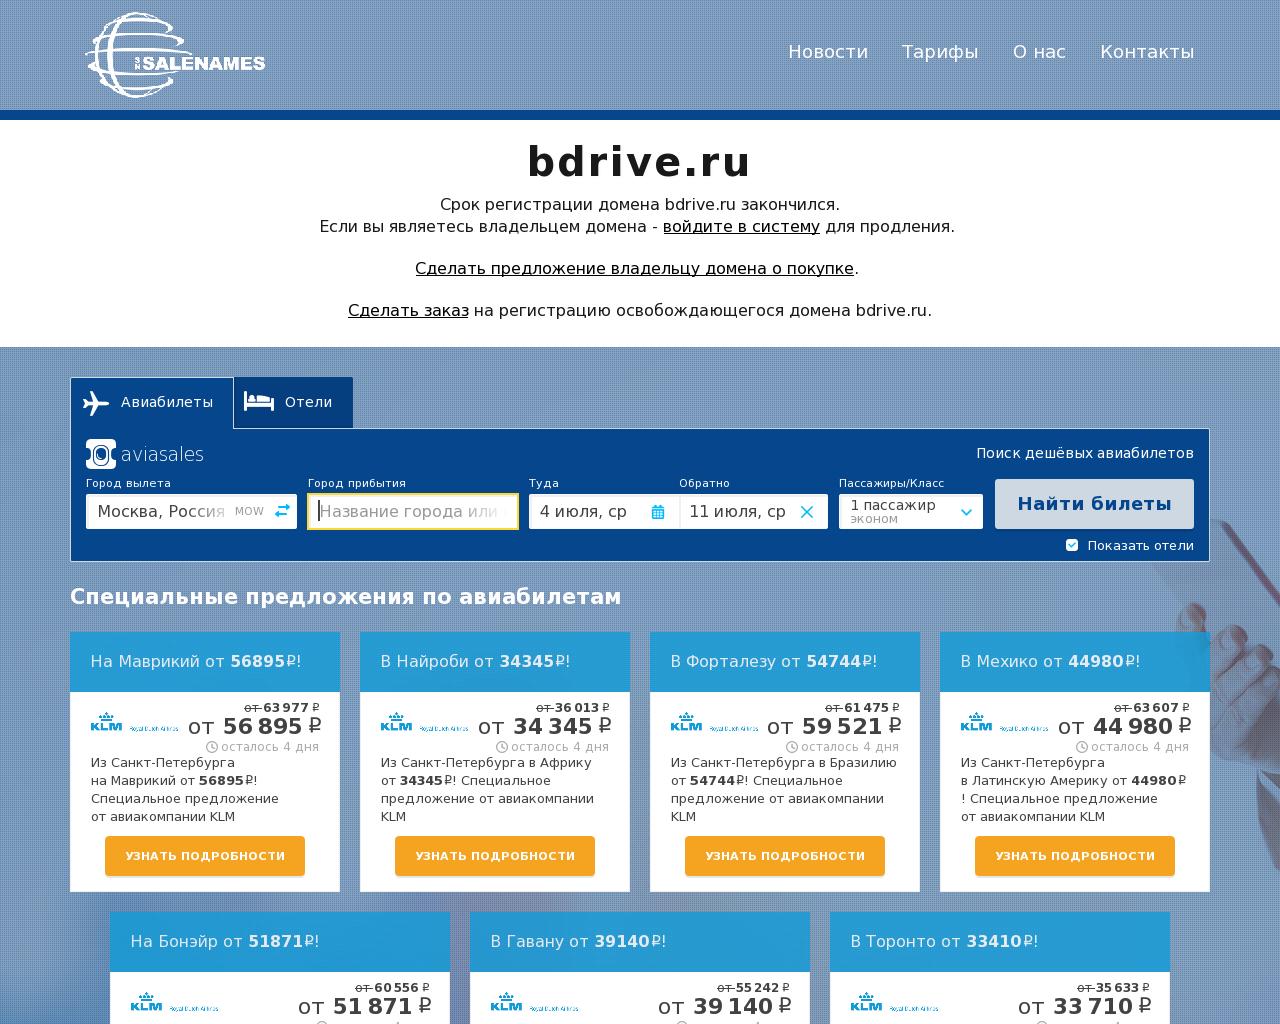 Изображение сайта bdrive.ru в разрешении 1280x1024